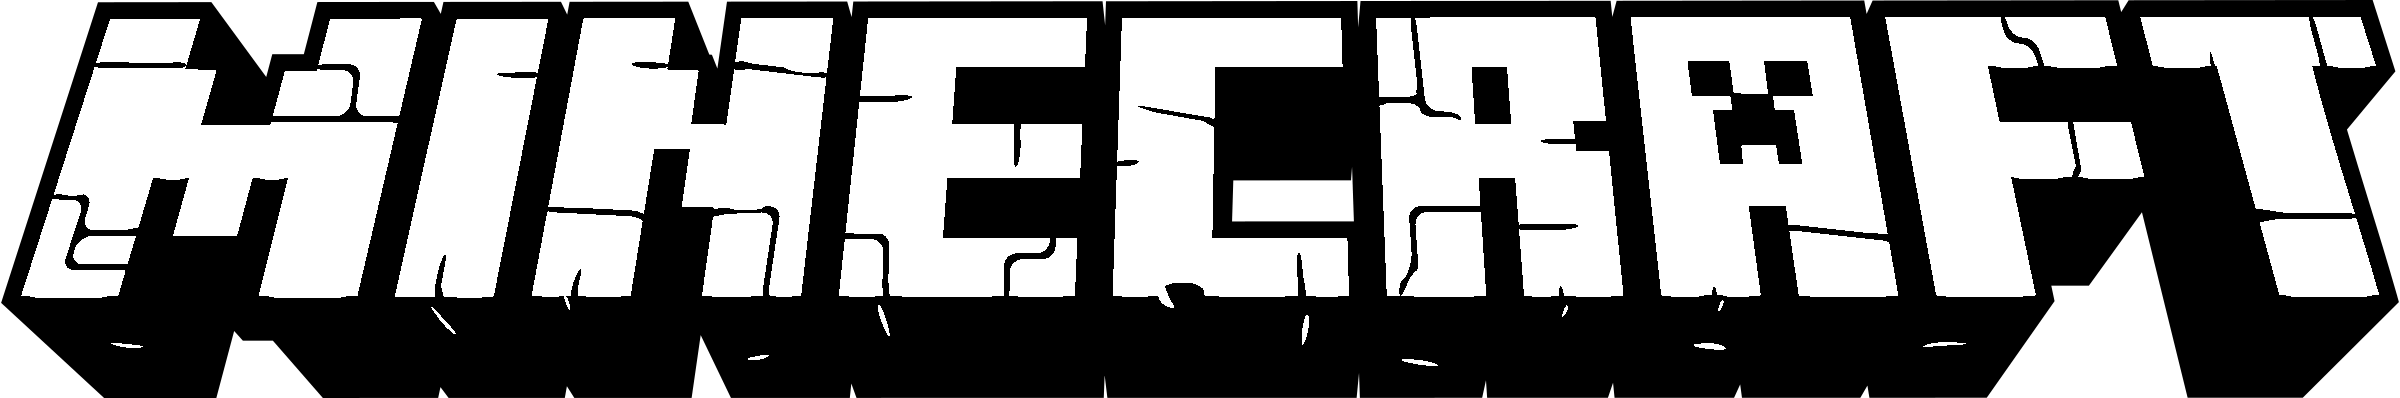 Mionecraft Logo - Minecraft Logo PNG Transparent & SVG Vector - Freebie Supply